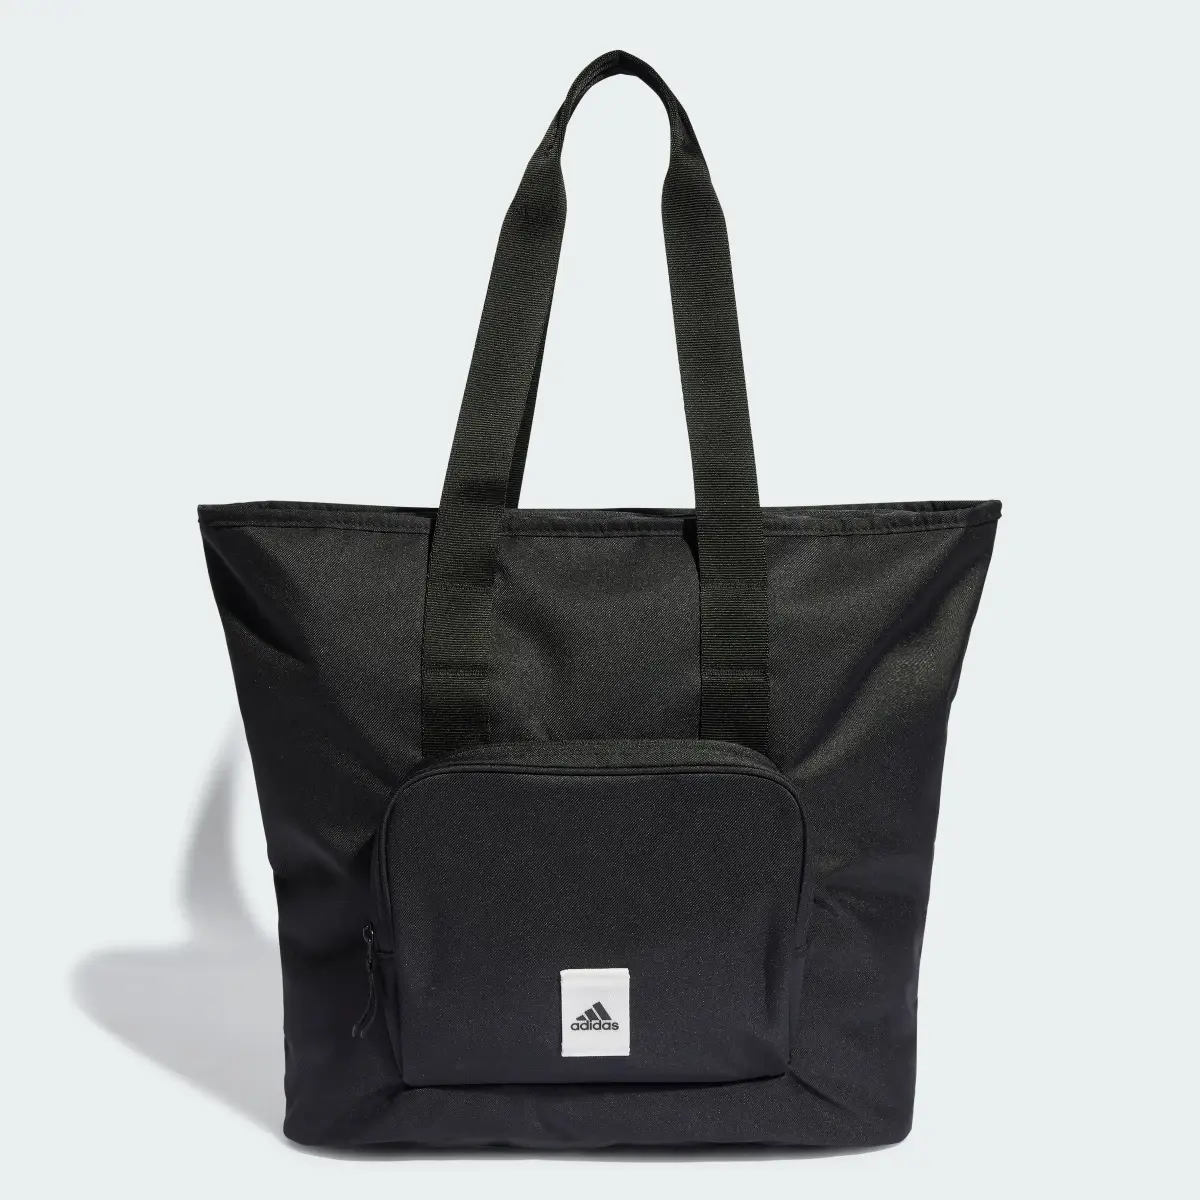 Adidas Tote Bag Prime. 1